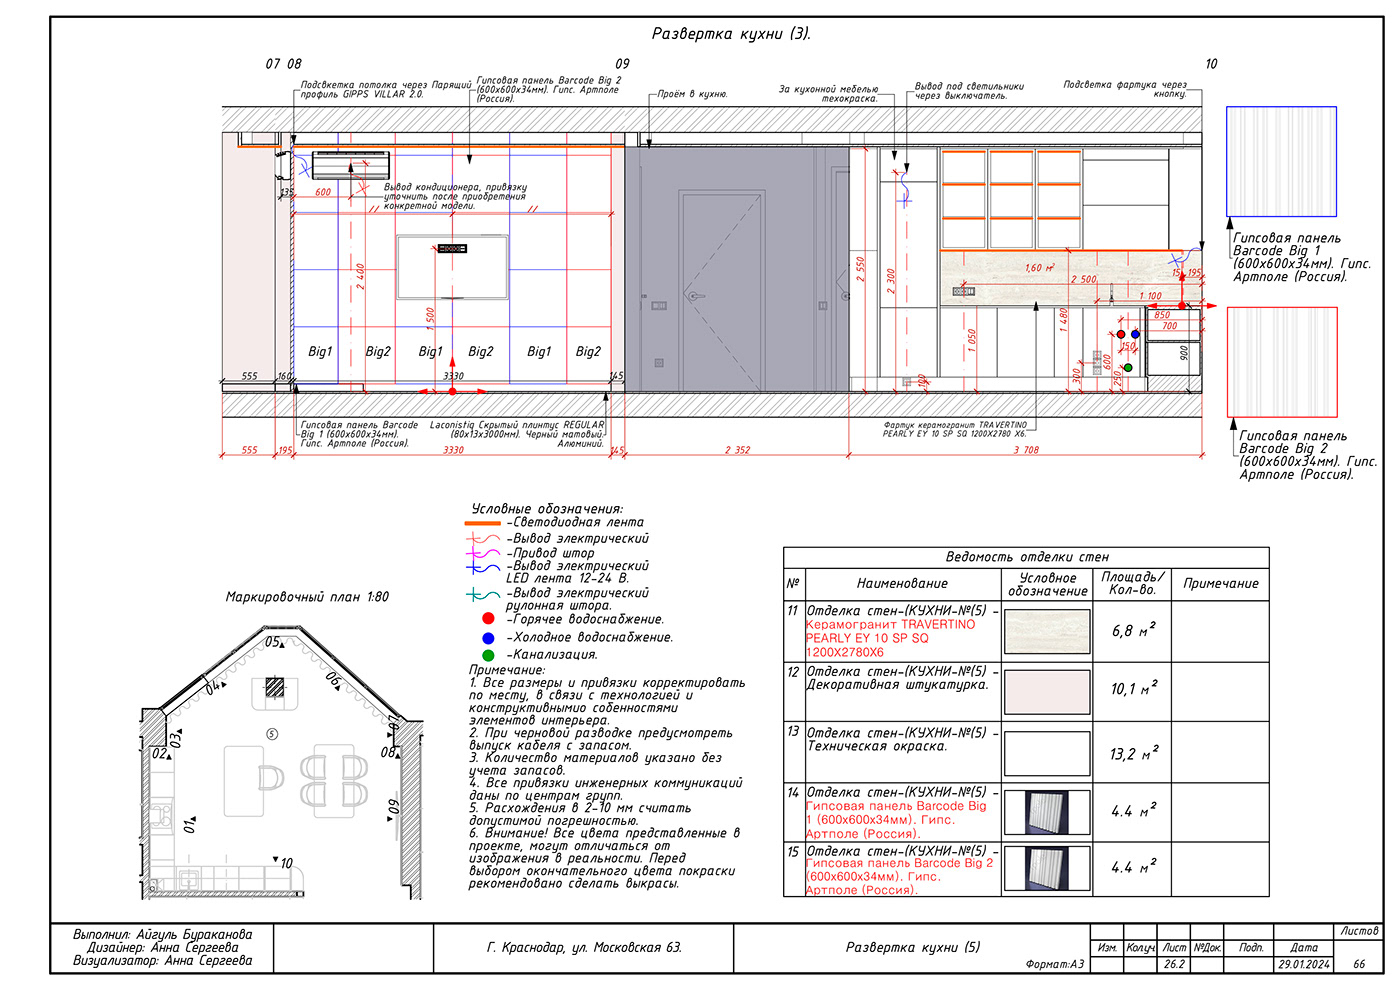 design blueprints дизайн интерьера ArchiCAD интерьер проектная документация рабочая документация рабочие чертежи ЧЕРТЕЖИ ИНТЕРЬЕРА чертежник